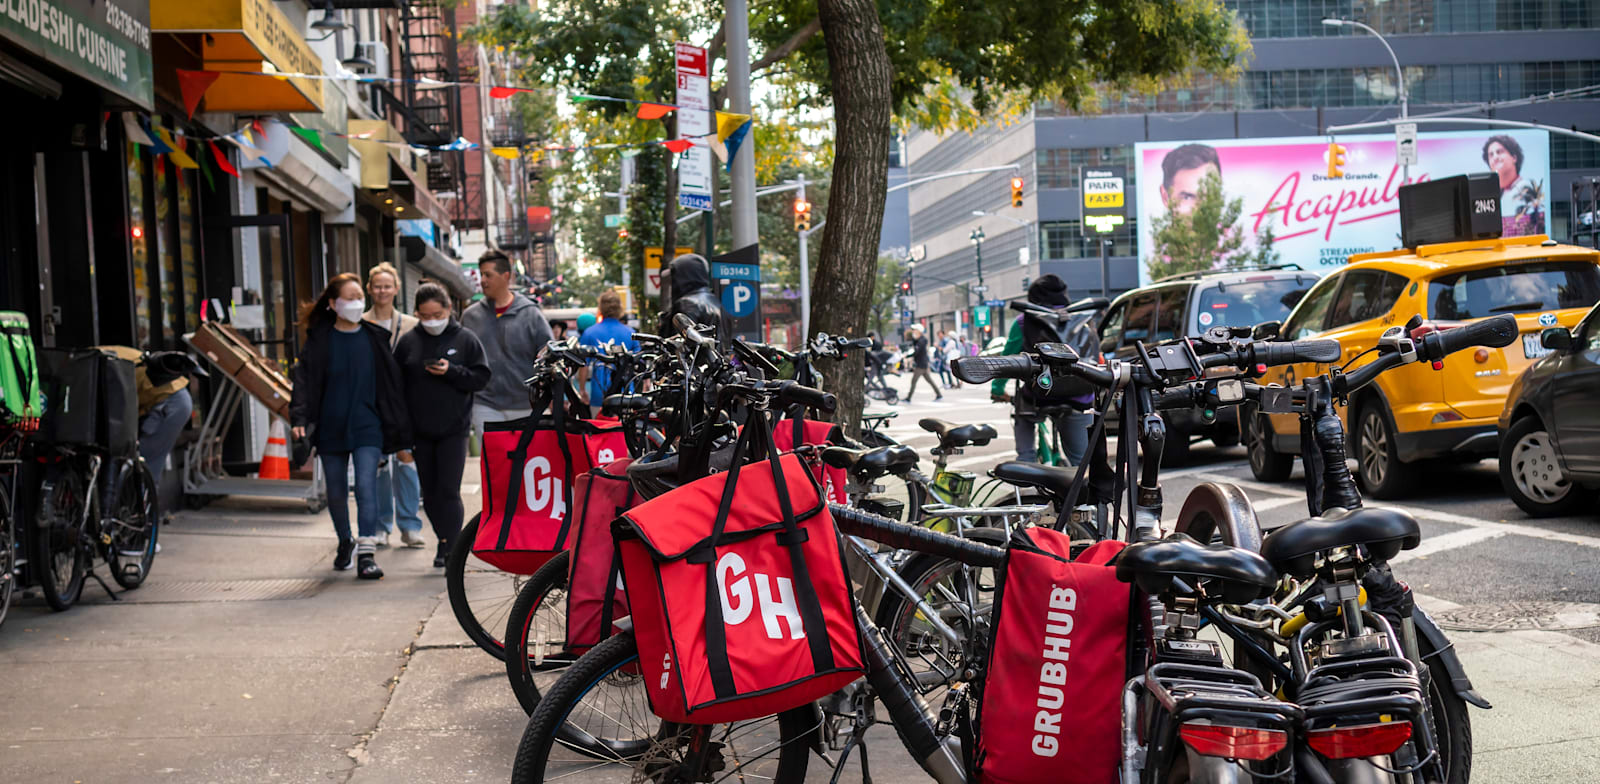 אופני שליחויות של גראבהאב בניו יורק / צילום: Shutterstock